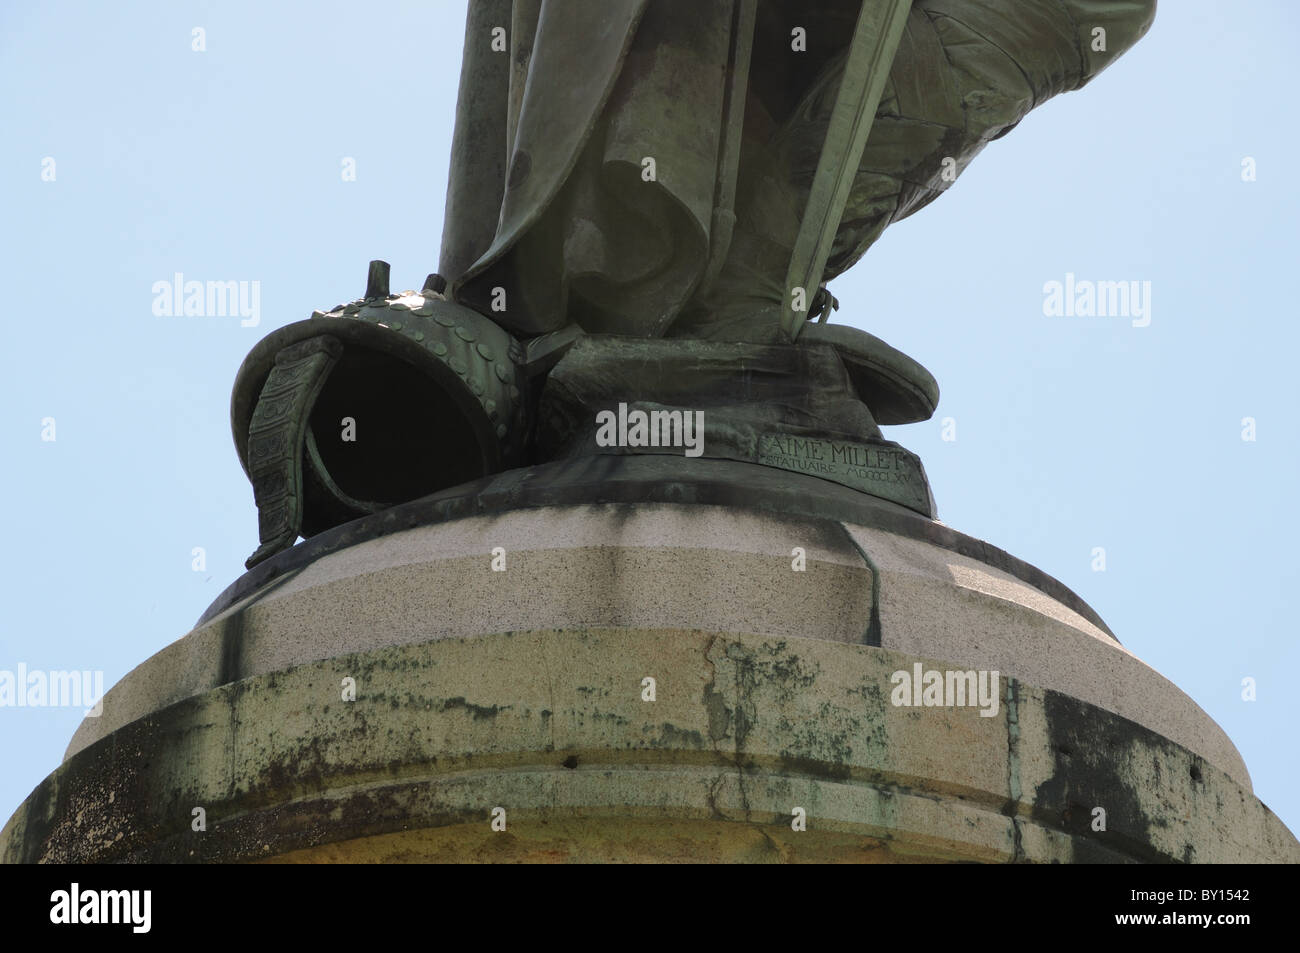 Base de statue monumentale de Vercingétorix par Aimé Millet montrant le nom du sculpor Mont Auxois Alise-Sainte-reine France ci-dessus Banque D'Images